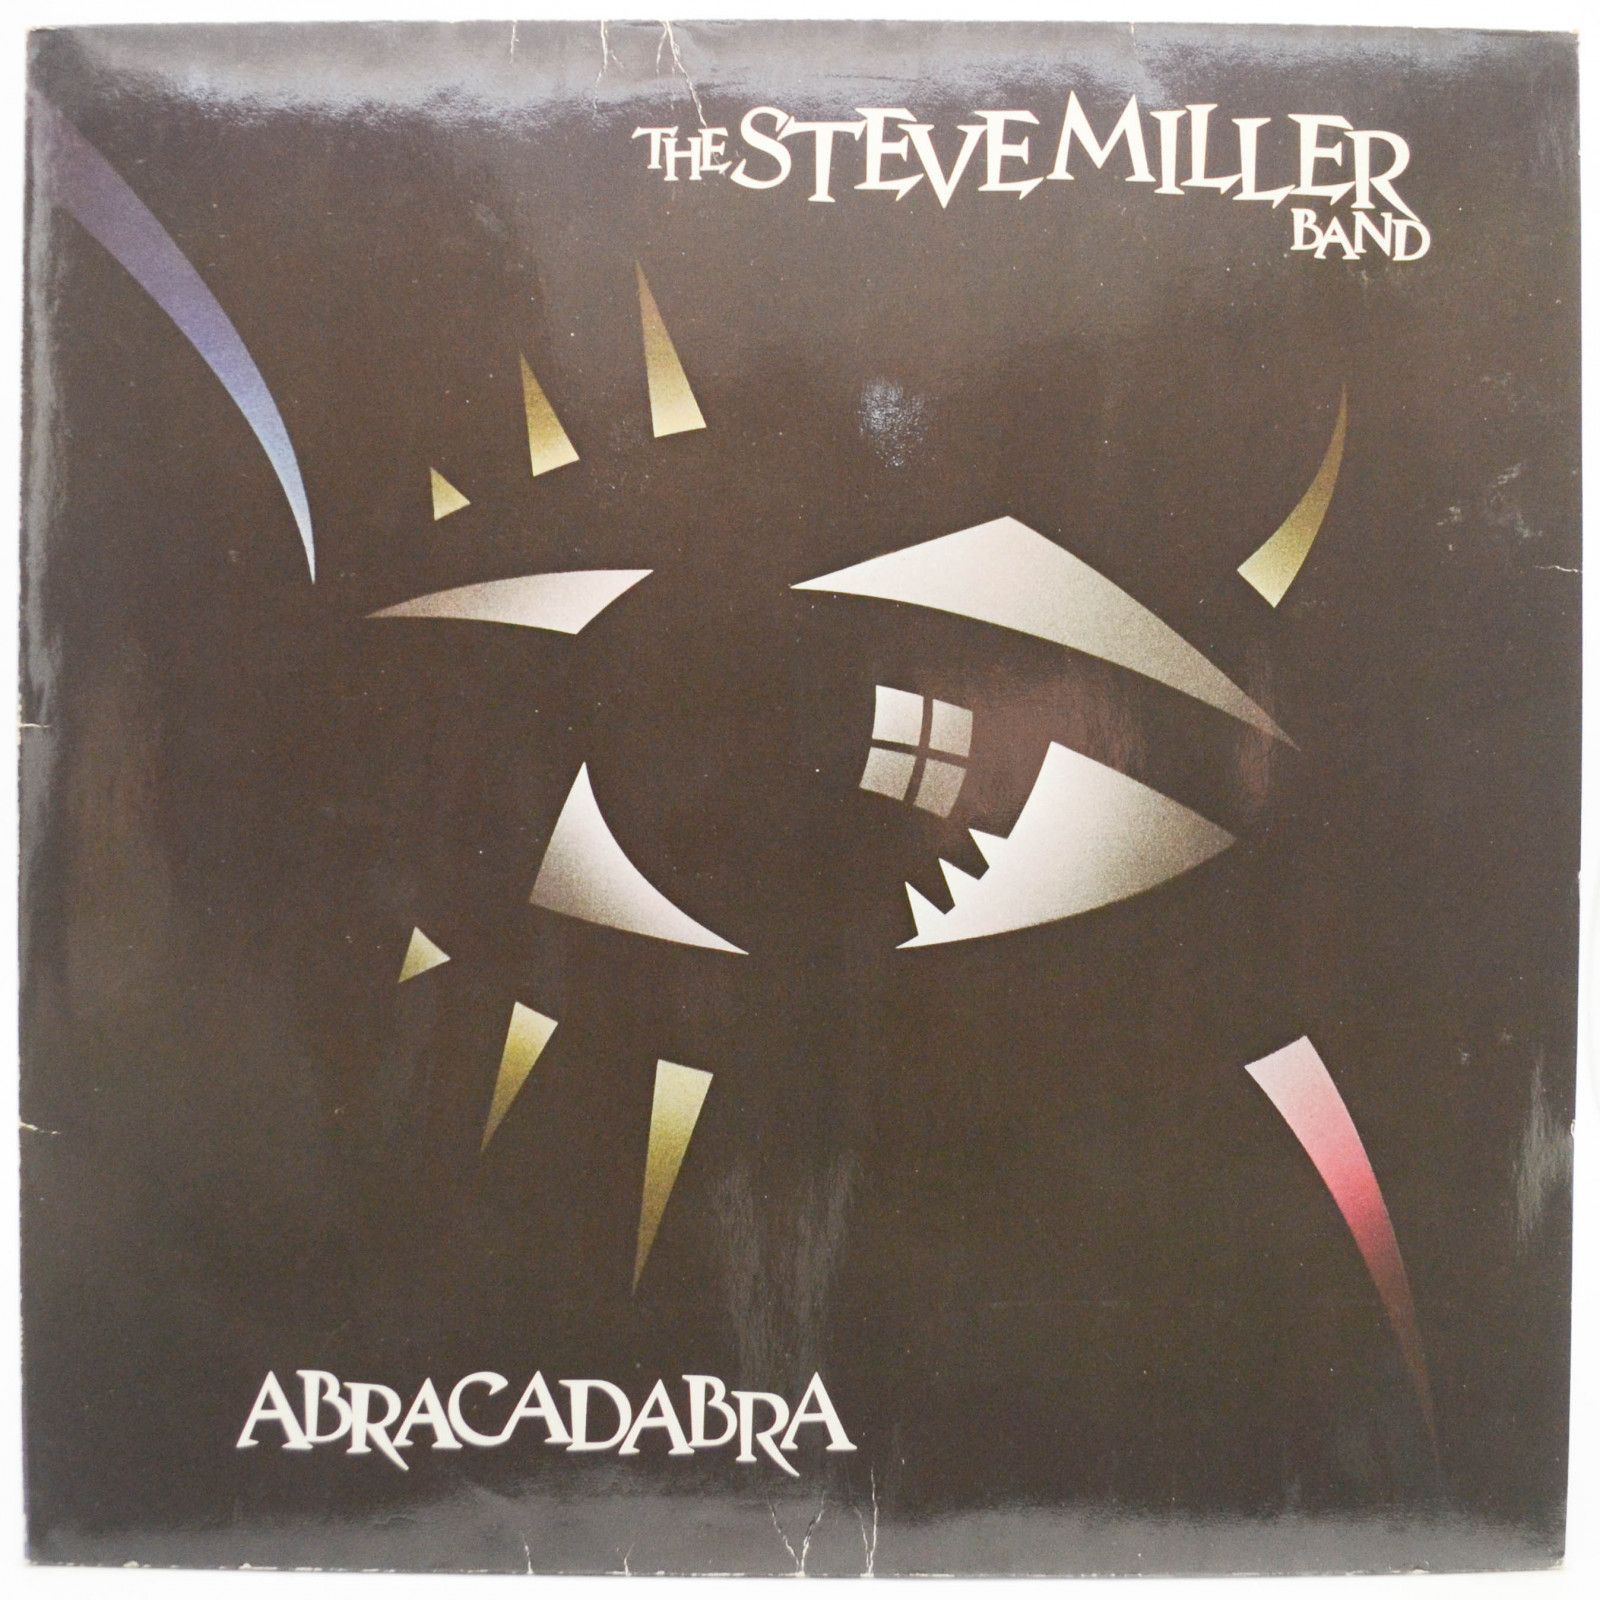 Steve Miller Band — Abracadabra, 1982